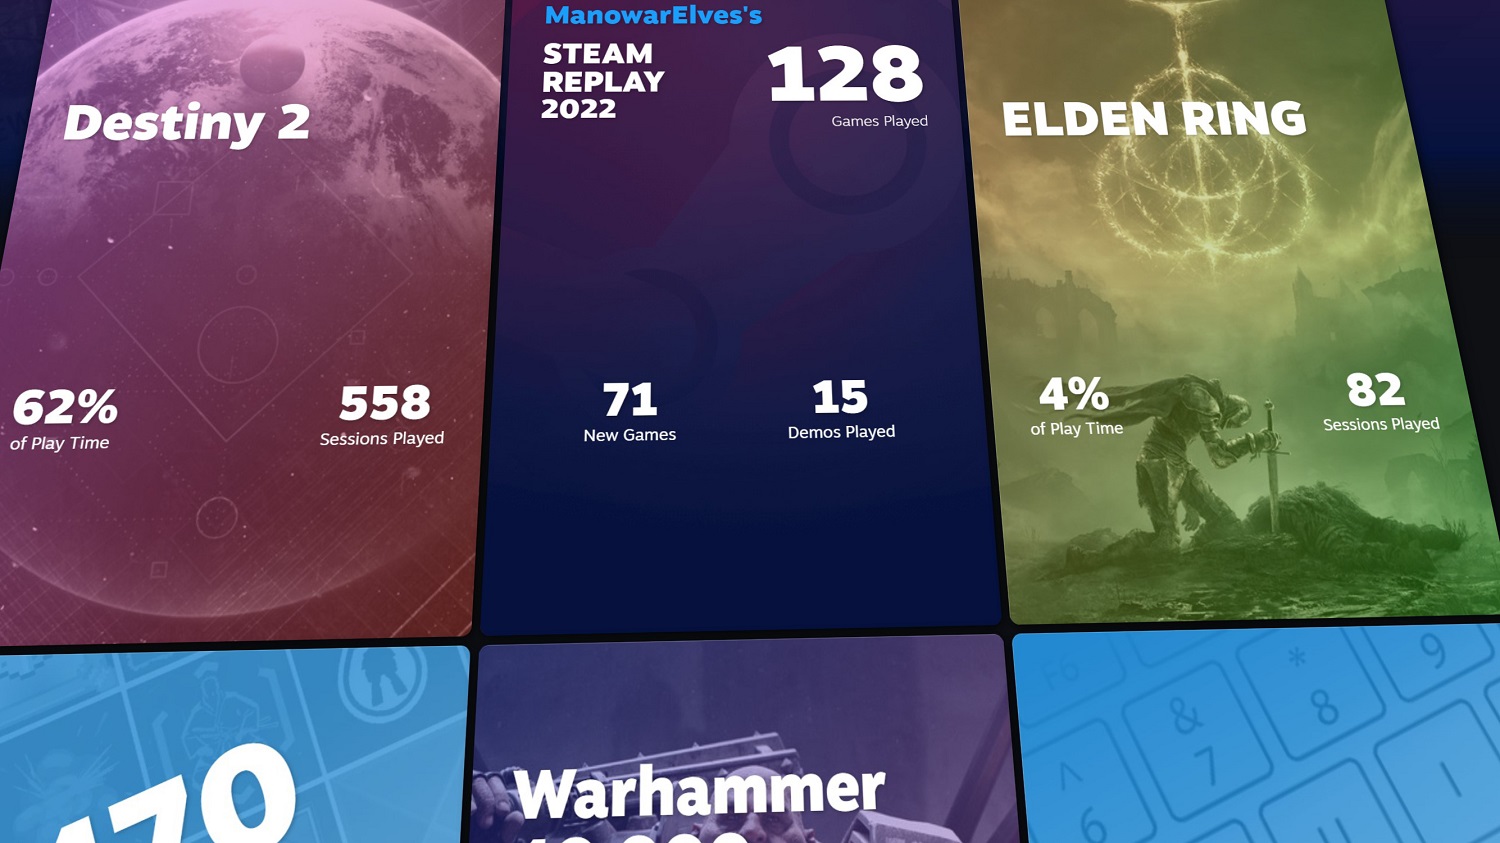 Profilstatistiken in Steam Replay 2022.